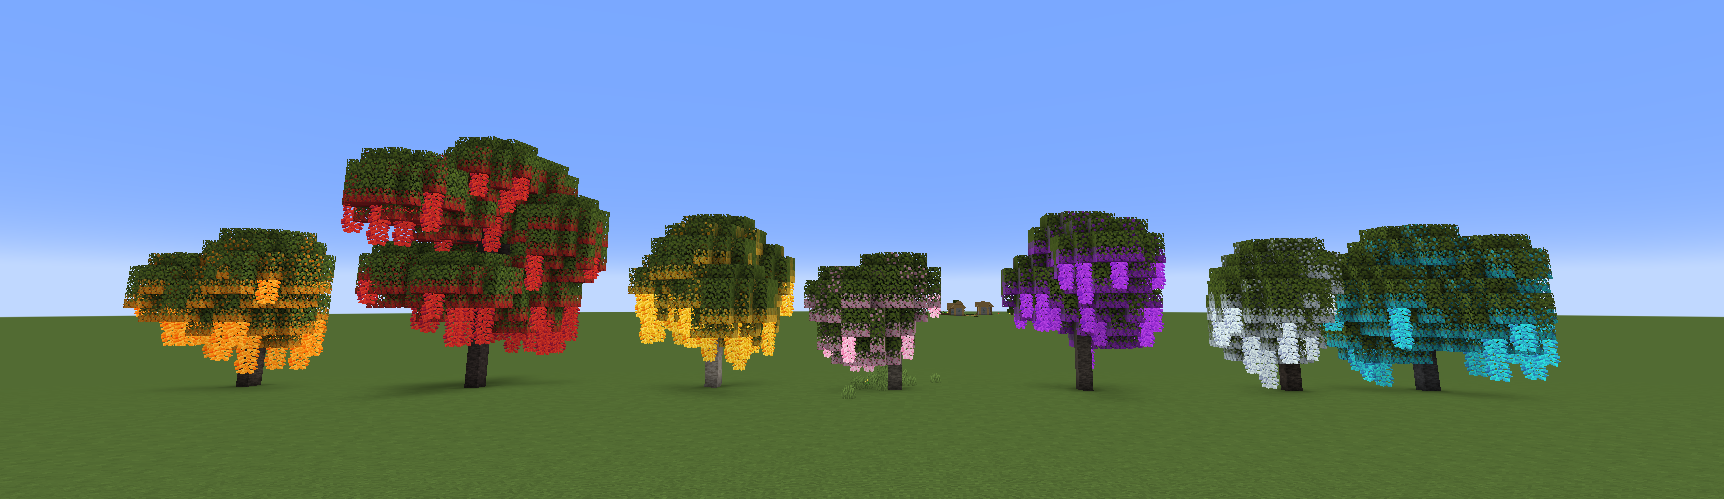 Azalea Trees